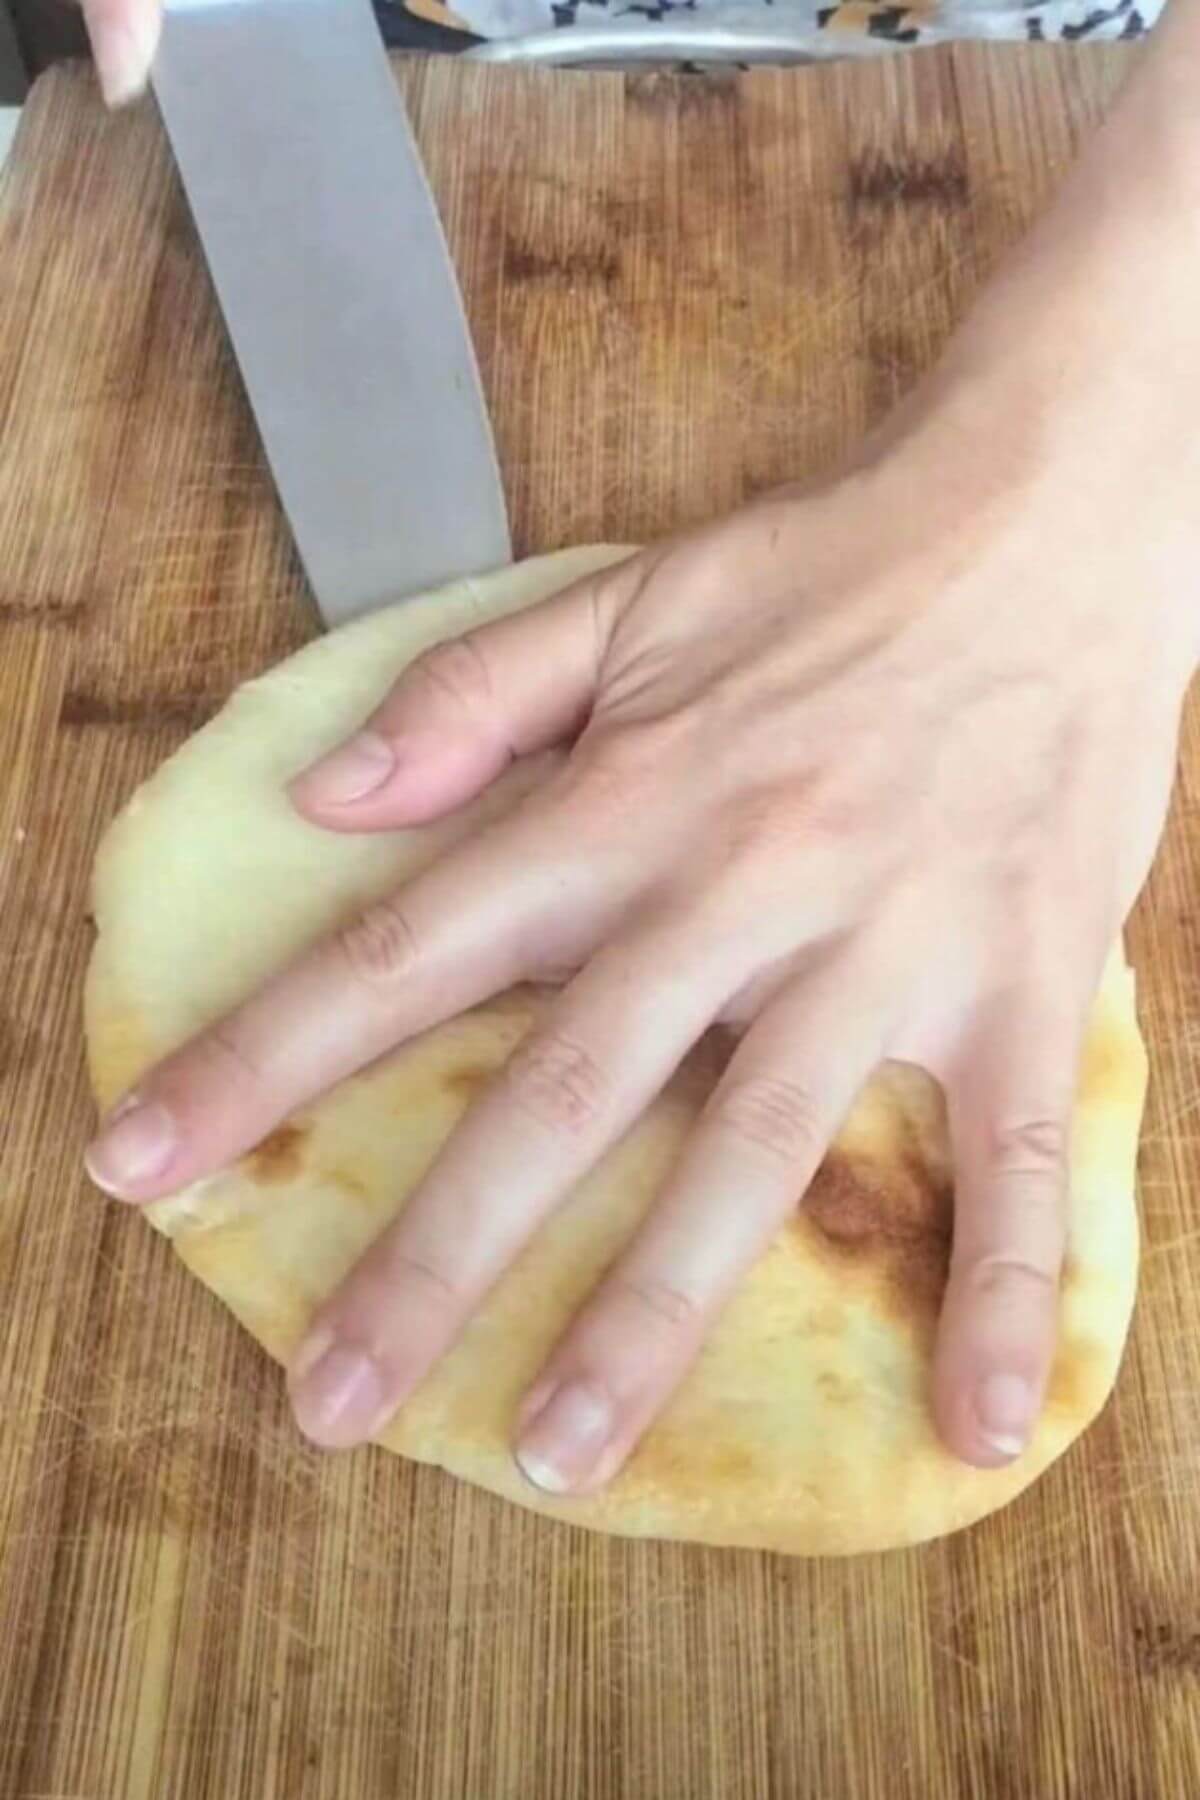 Cutting a pita bread in half on a wooden board.